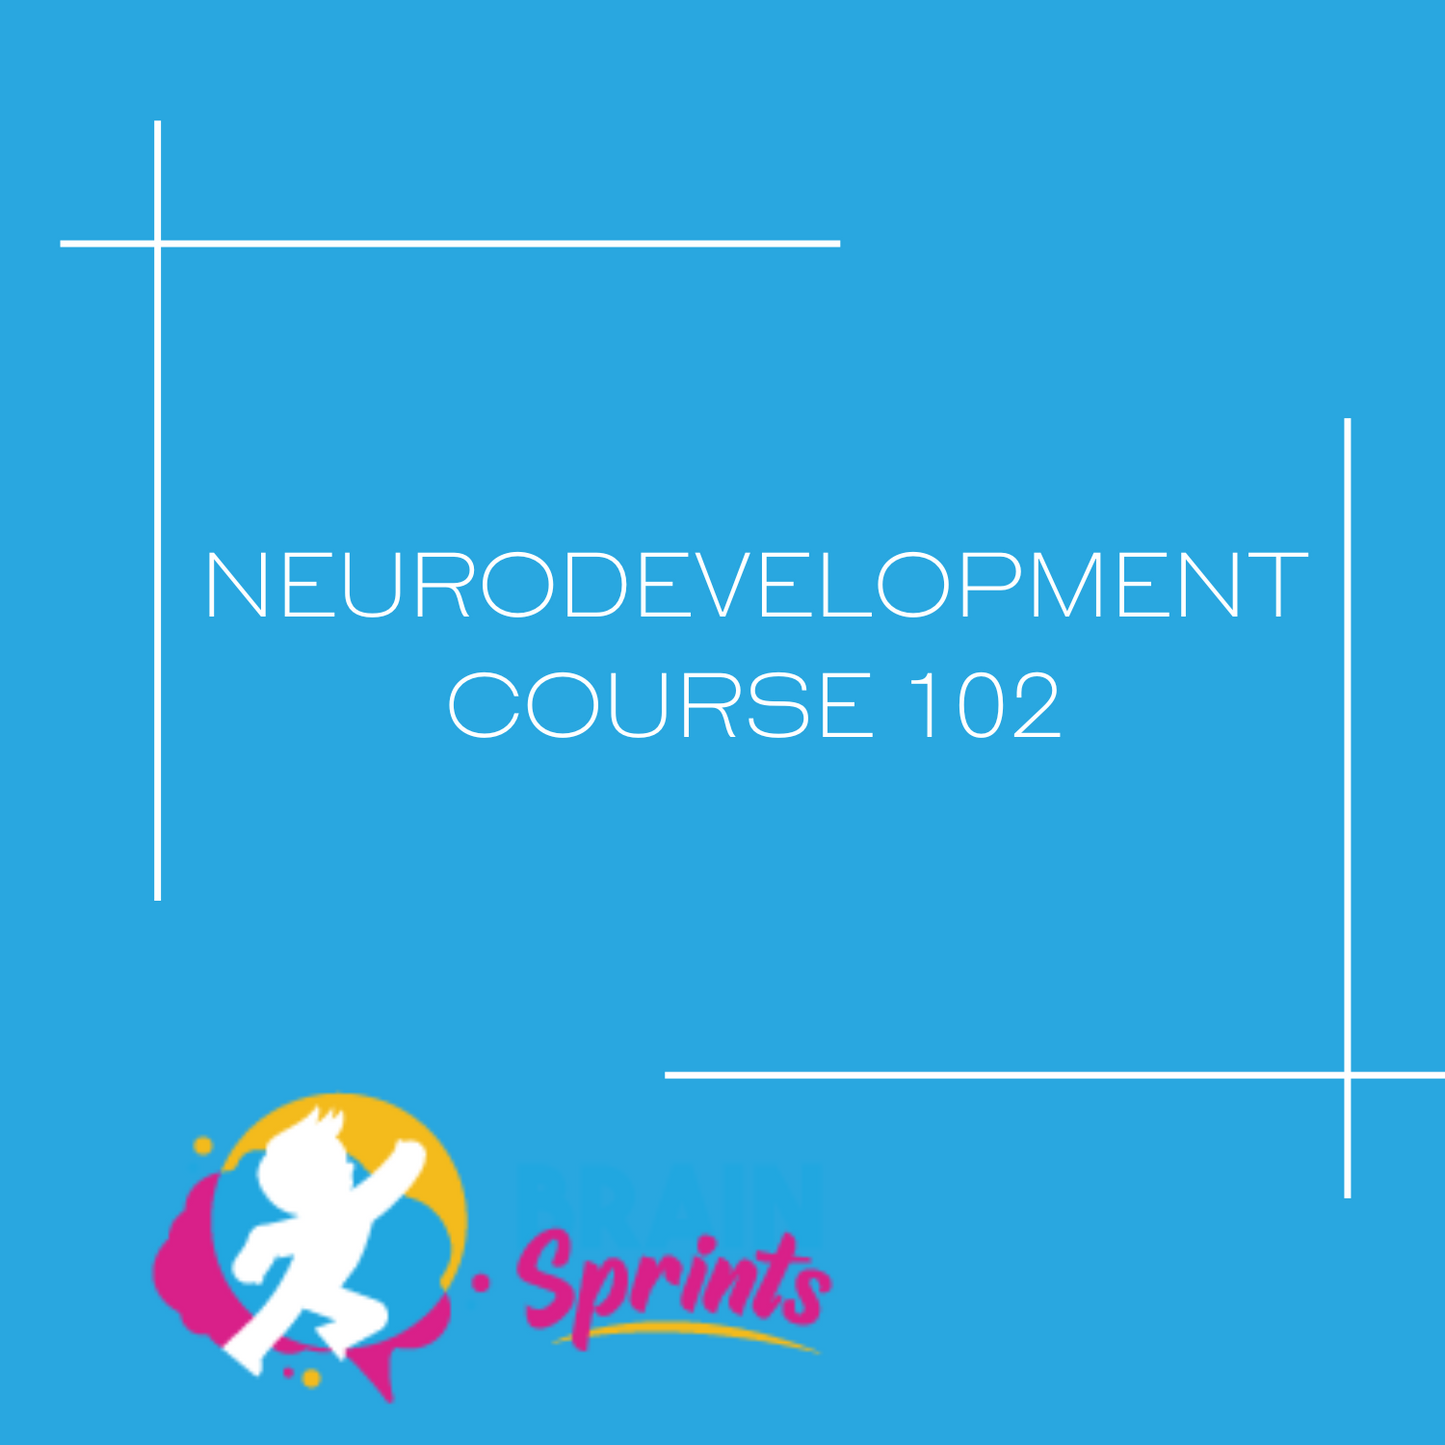 NeuroDevelopment Course 102